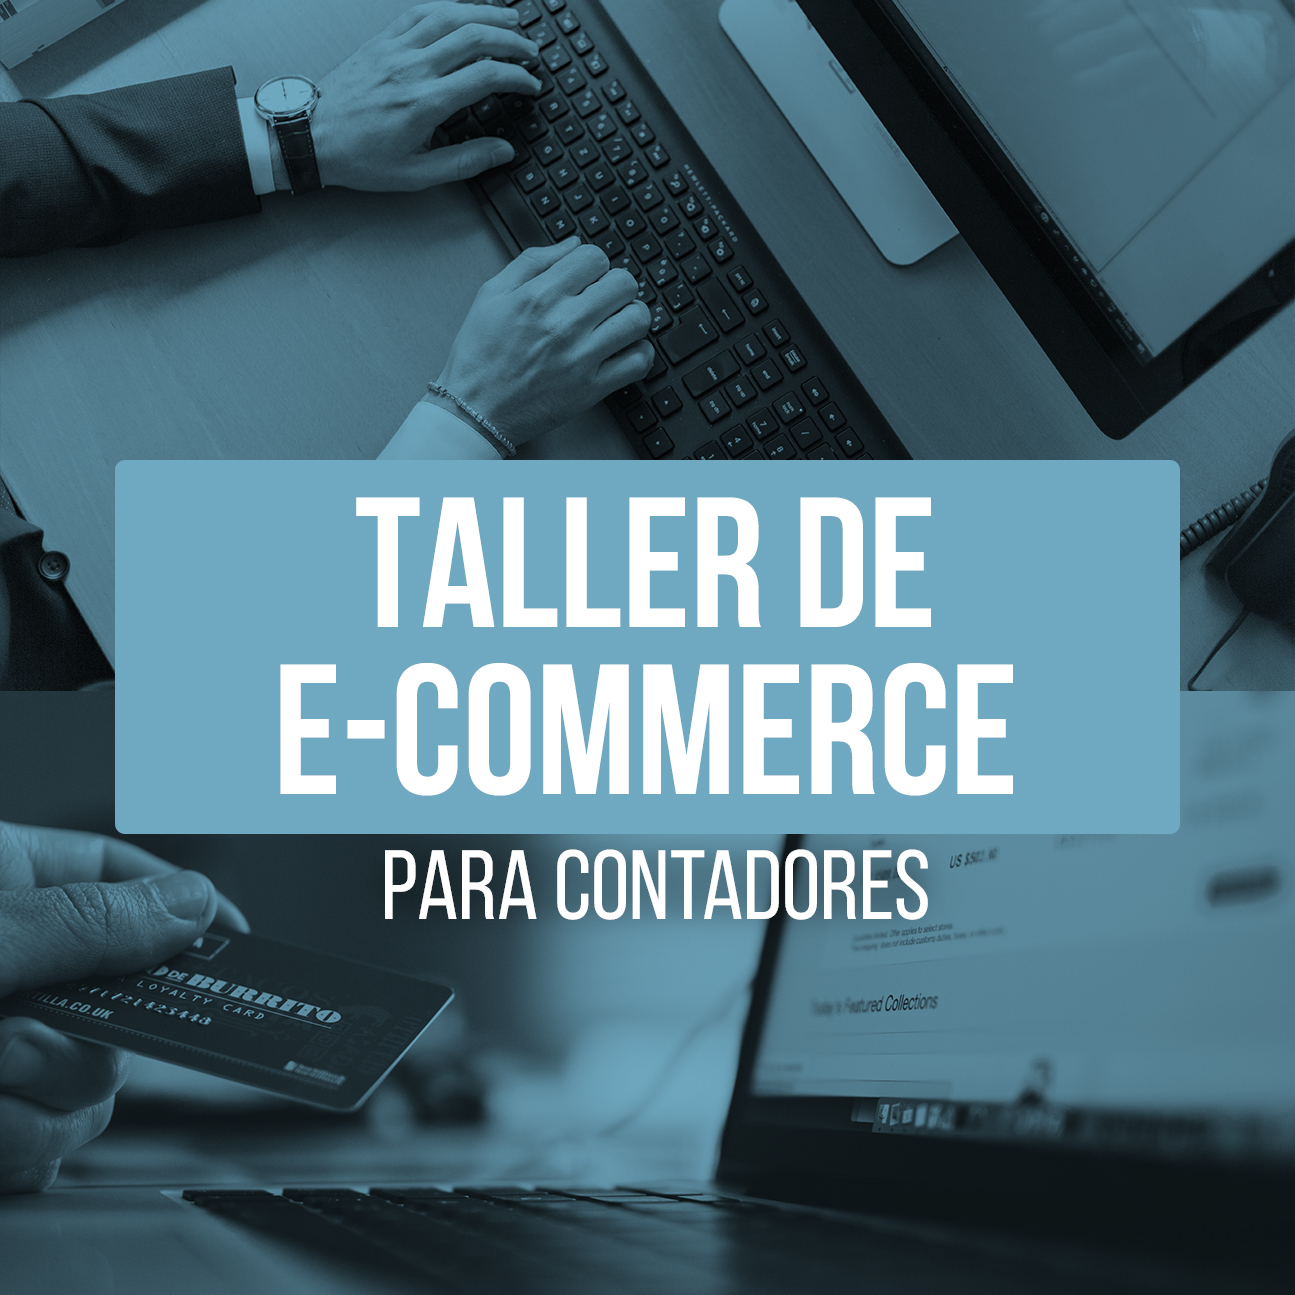 E-commerce para pequeñas empresas